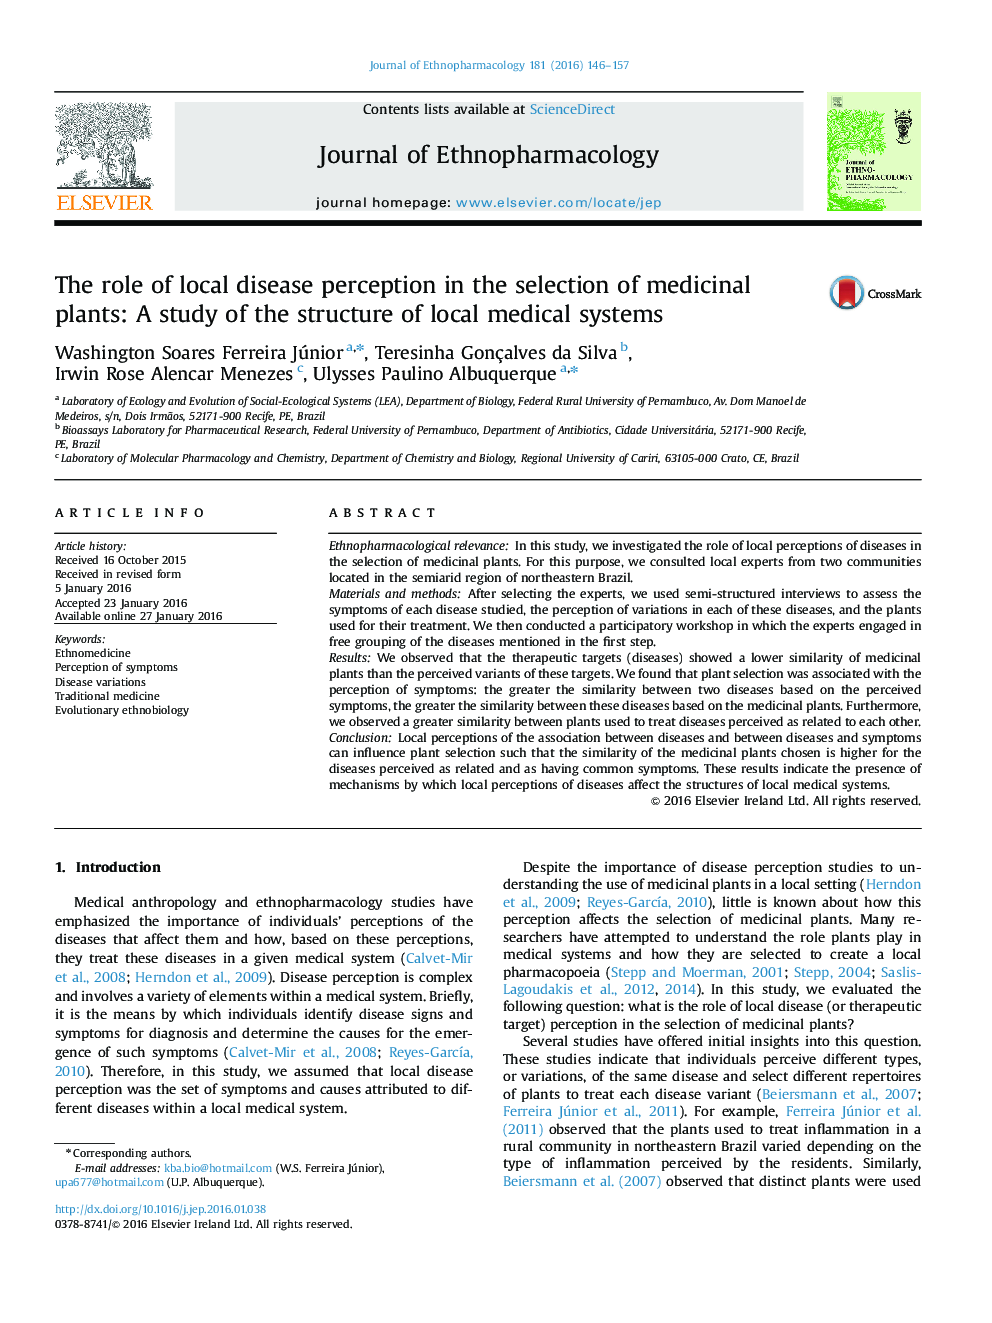 نقش درک بیماری های محلی در انتخاب گیاهان دارویی: مطالعه ساختار سیستم های پزشکی محلی 